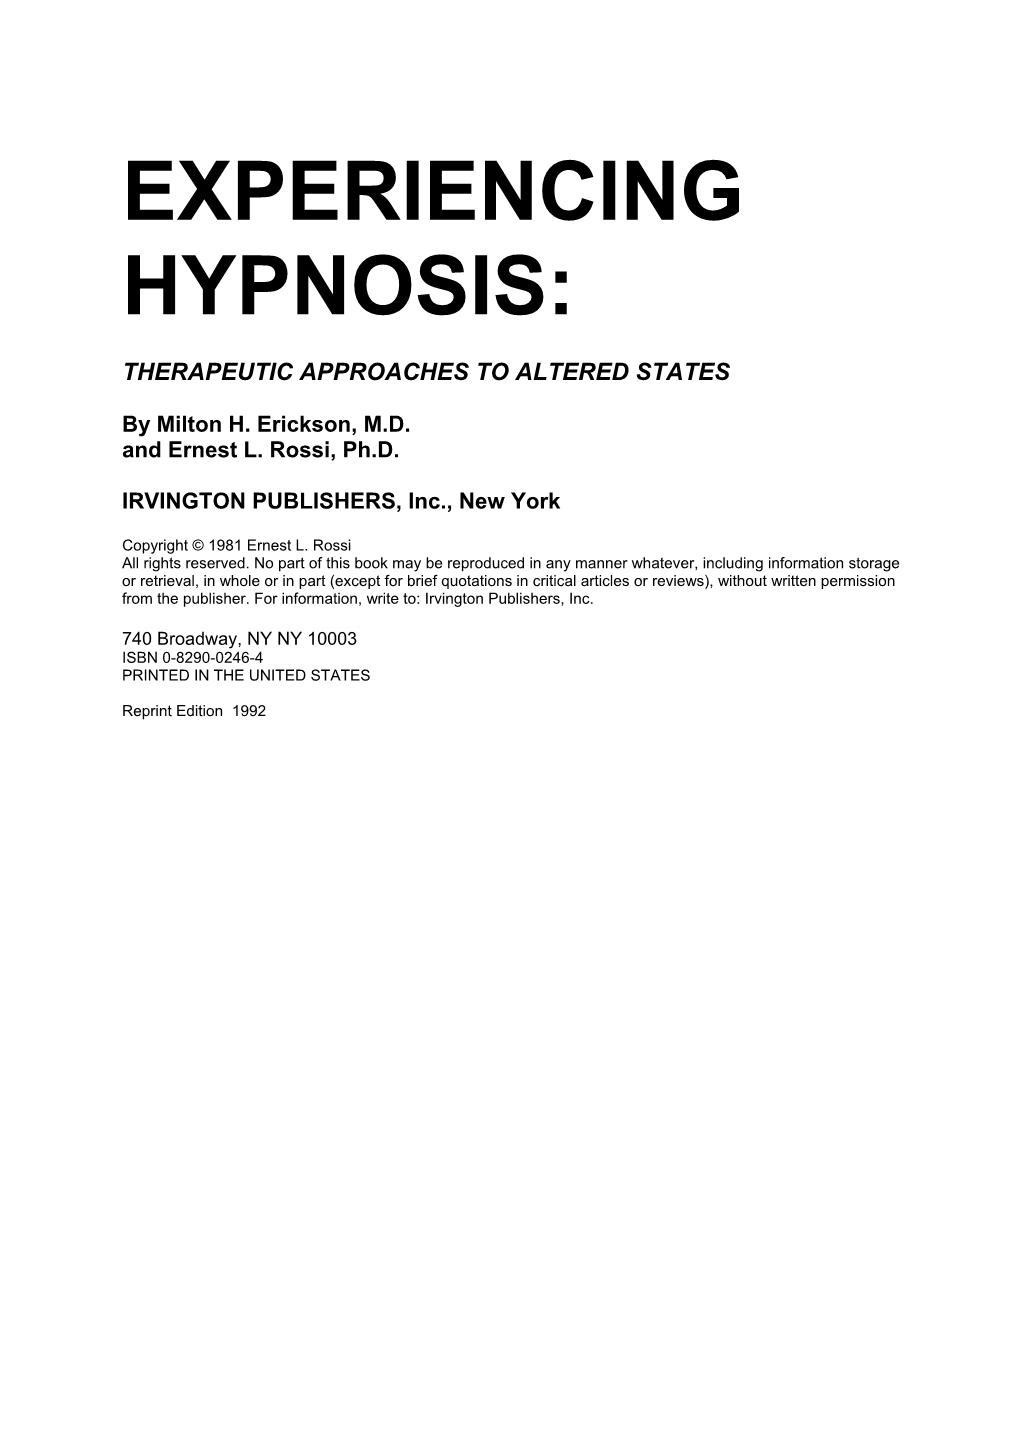 Experiencing Hypnosis